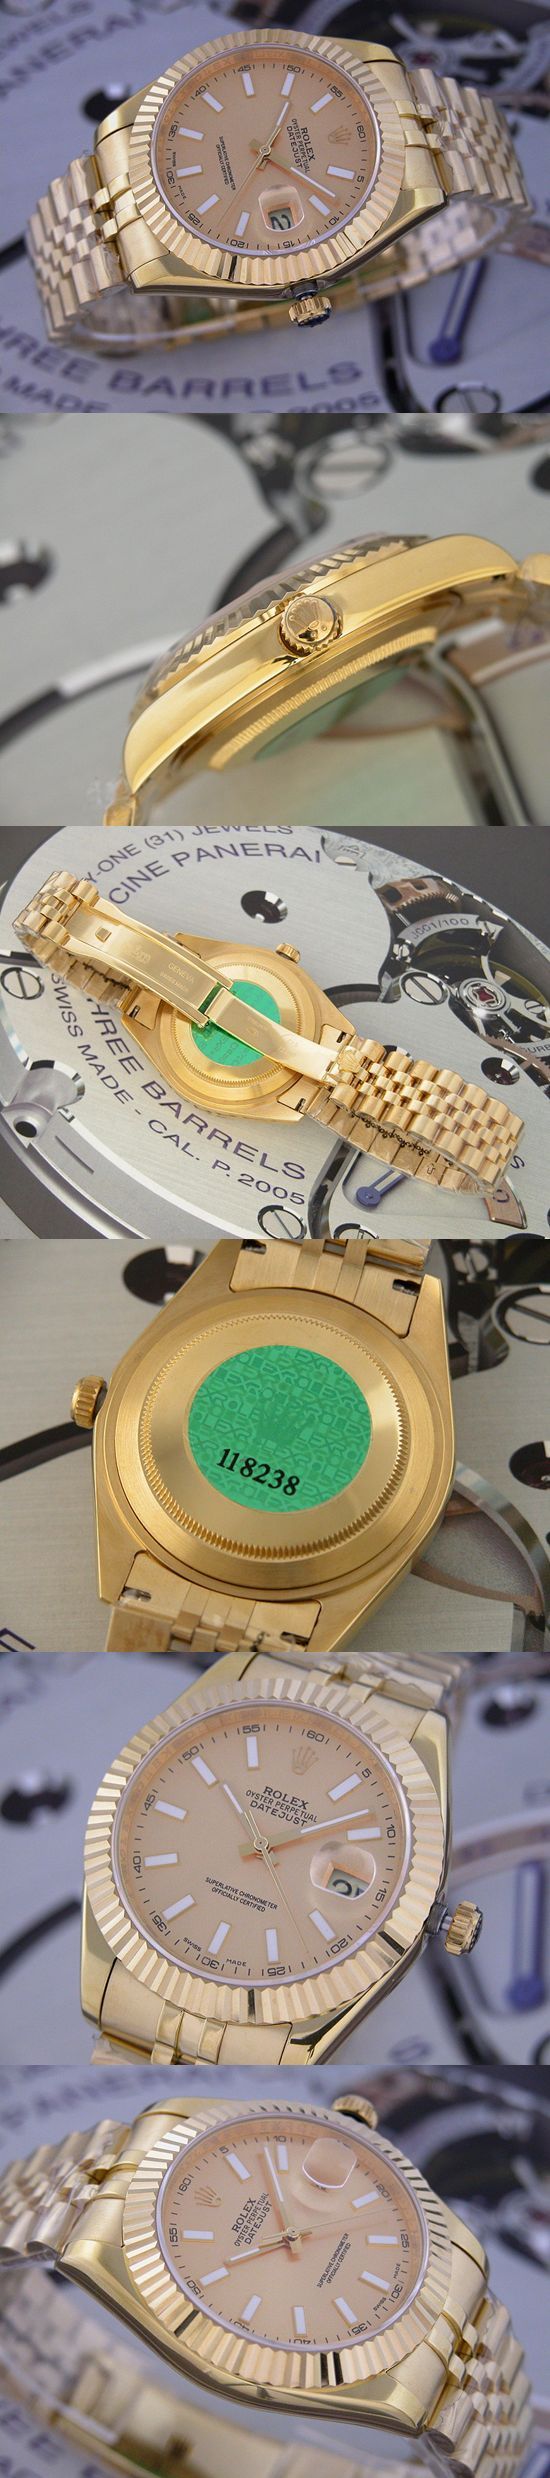 おしゃれなブランド時計がロレックス-デイトジャスト-ROLEX-118238-110-男性用を提供します.